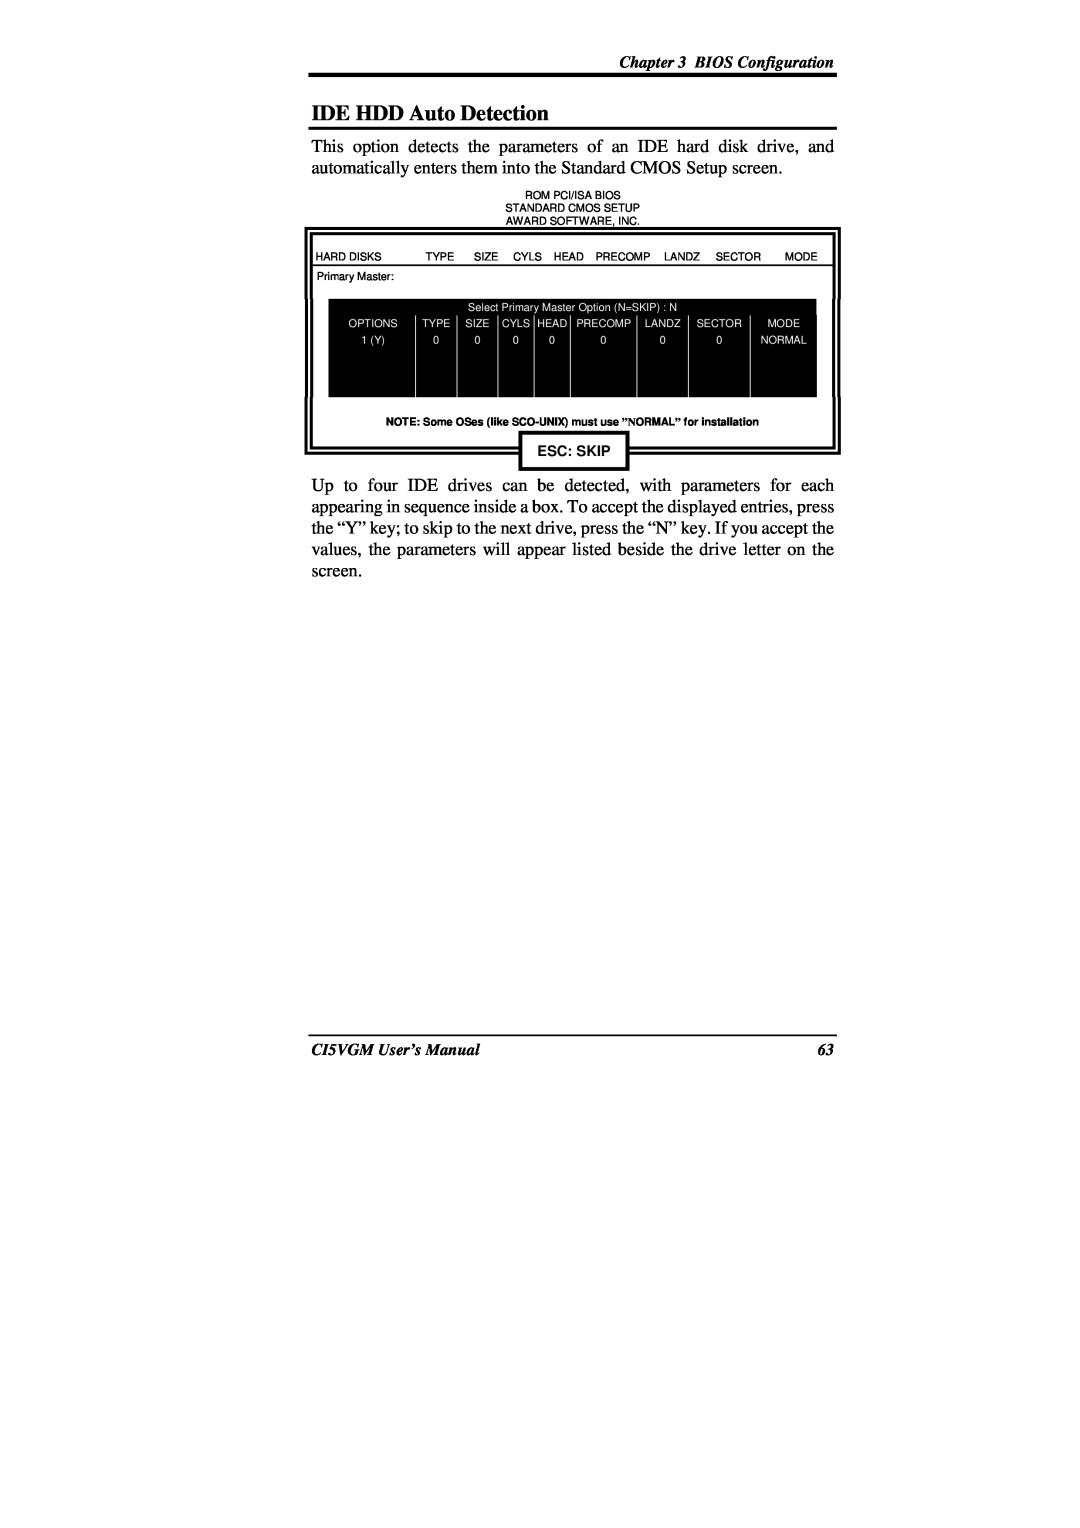 IBM CI5VGM Series user manual IDE HDD Auto Detection, Esc Skip 